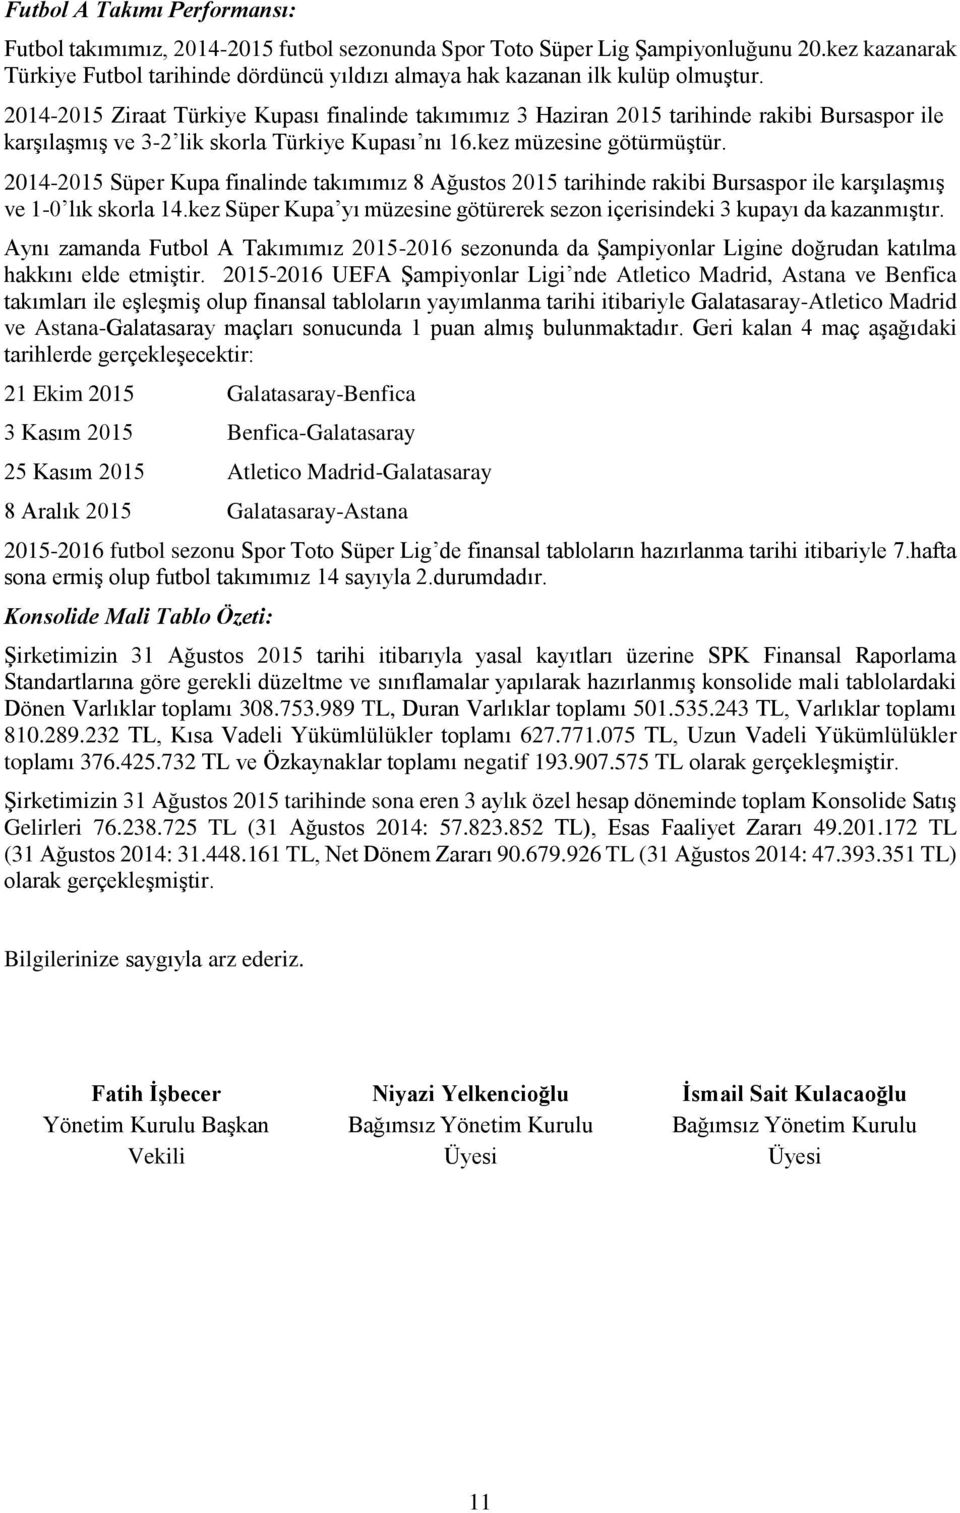 2014-2015 Ziraat Türkiye Kupası finalinde takımımız 3 Haziran 2015 tarihinde rakibi Bursaspor ile karşılaşmış ve 3-2 lik skorla Türkiye Kupası nı 16.kez müzesine götürmüştür.